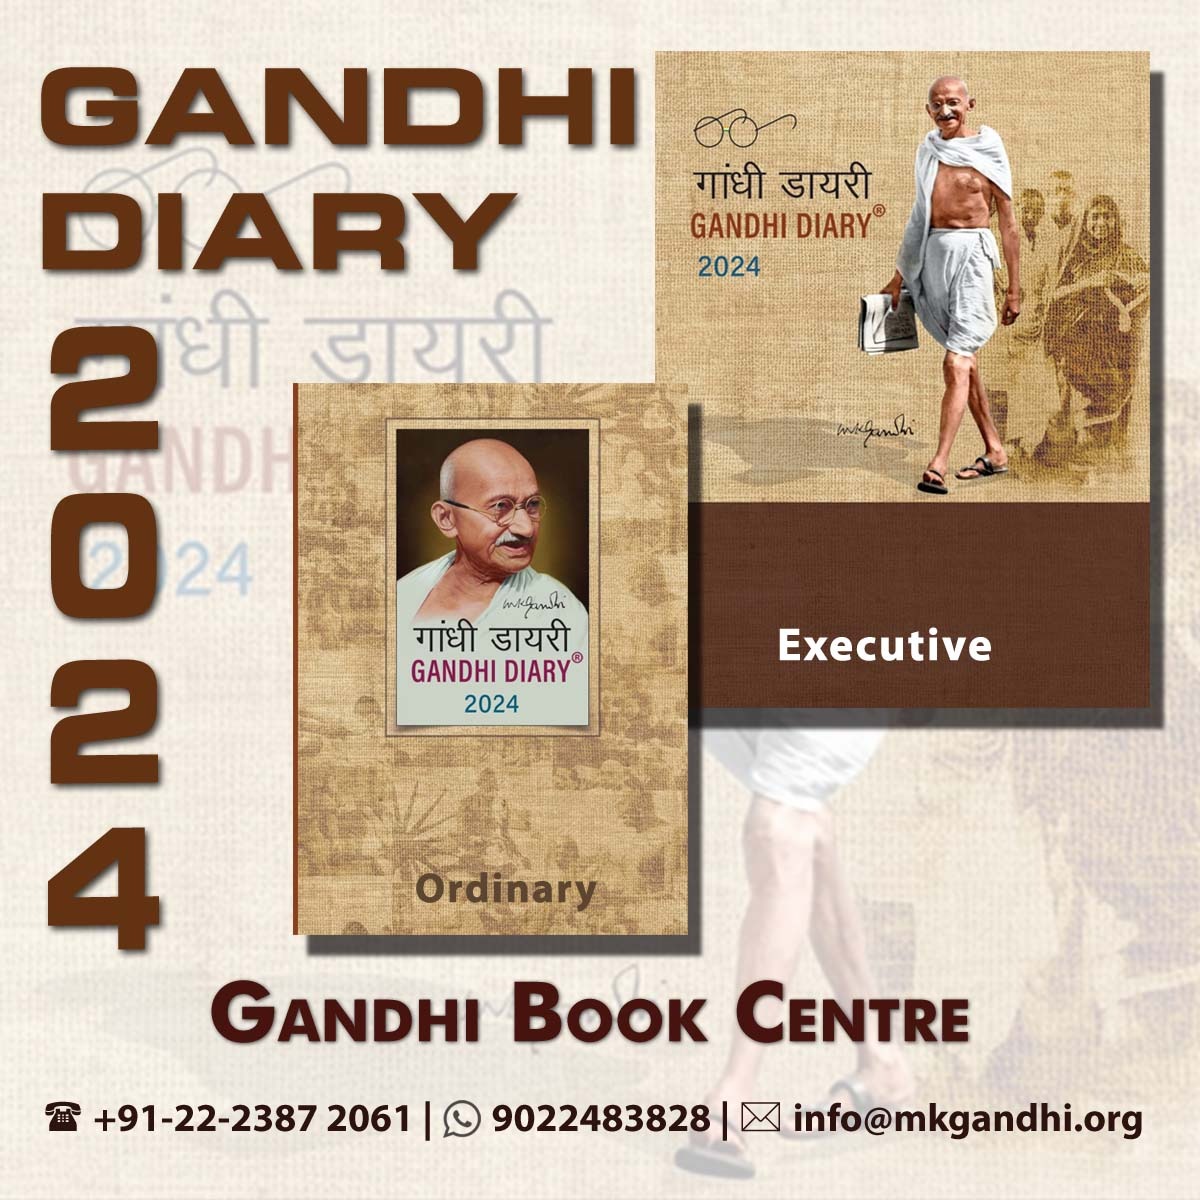 Gandhi Diary 2024